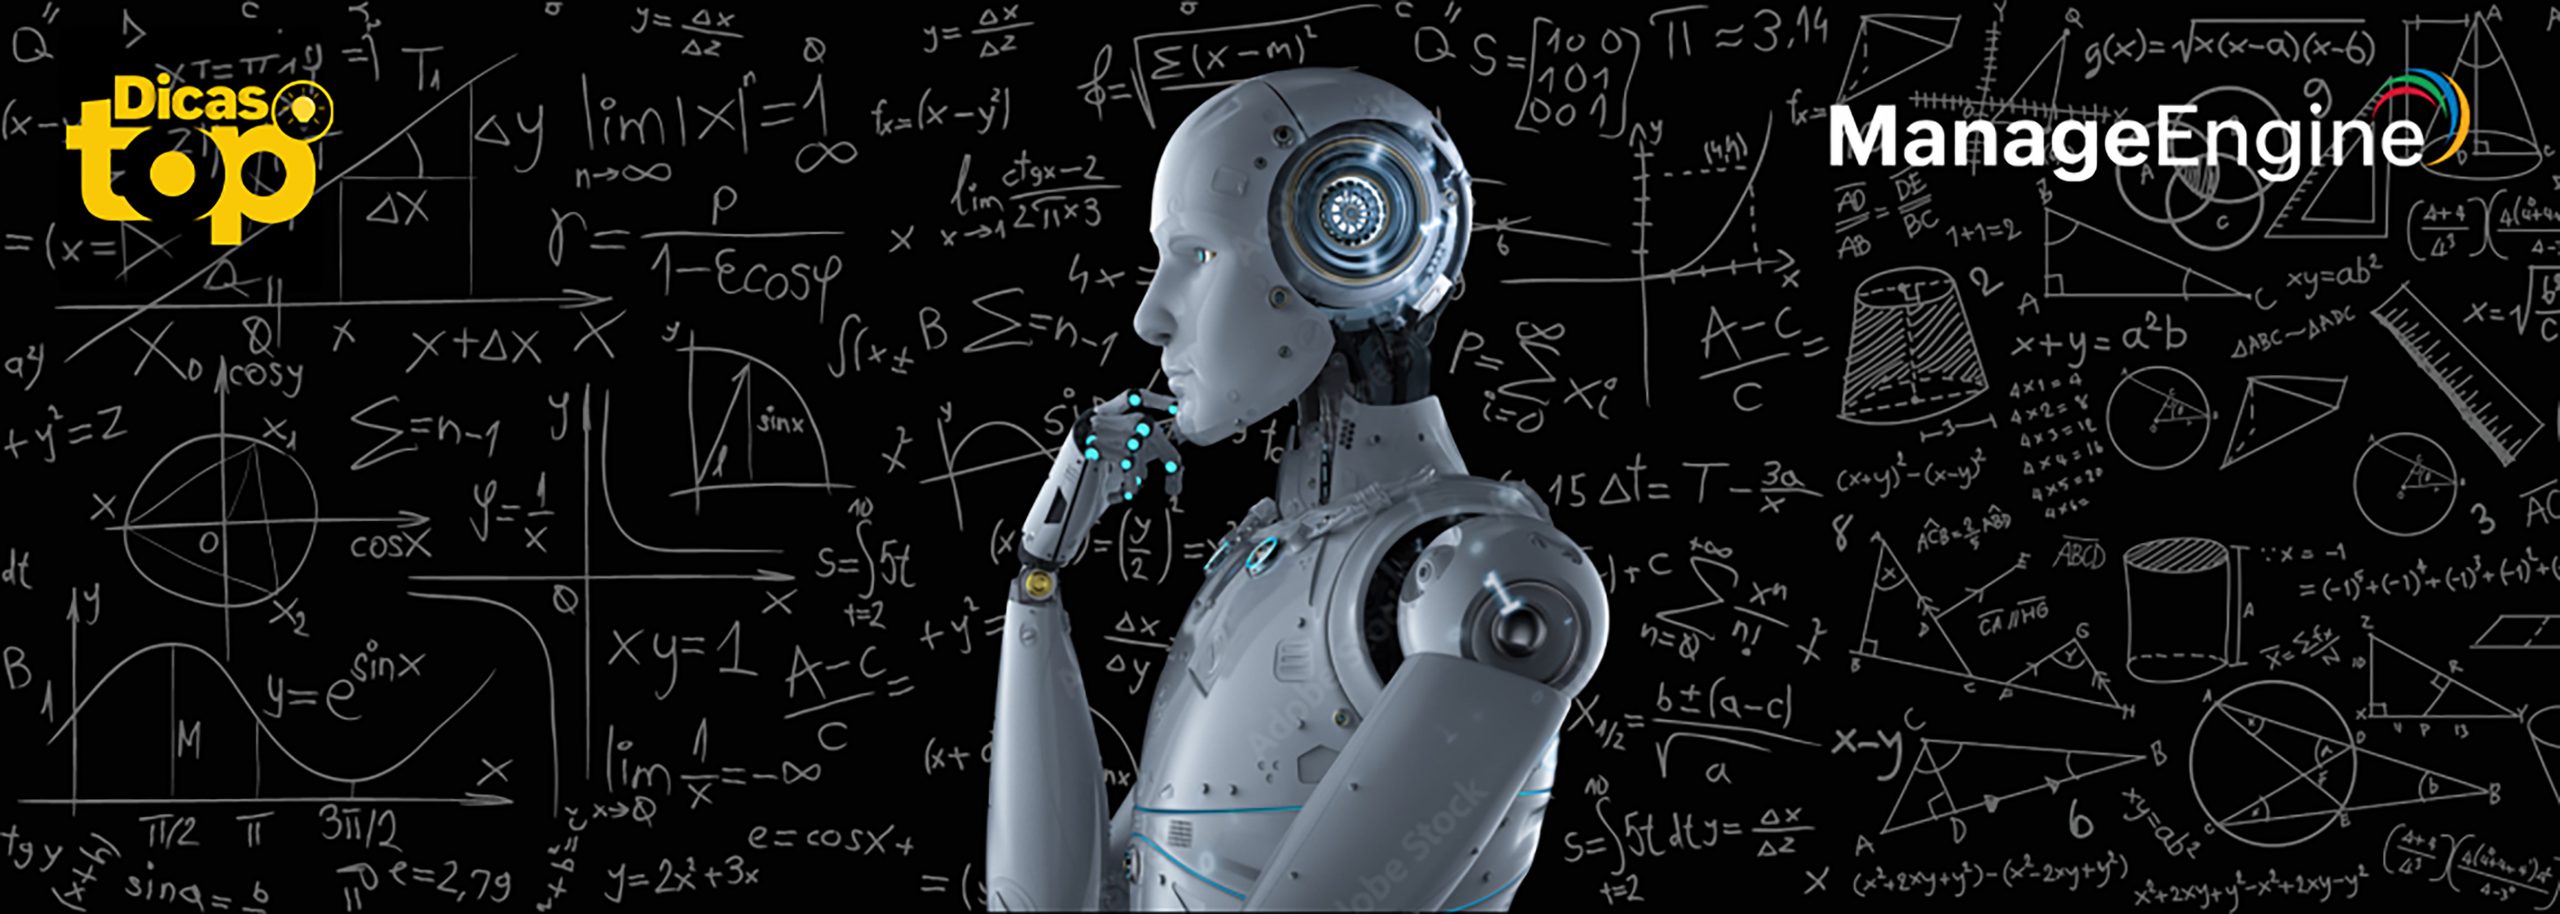 Imagem ilustrativa representando um robô em processo de aprendizado.